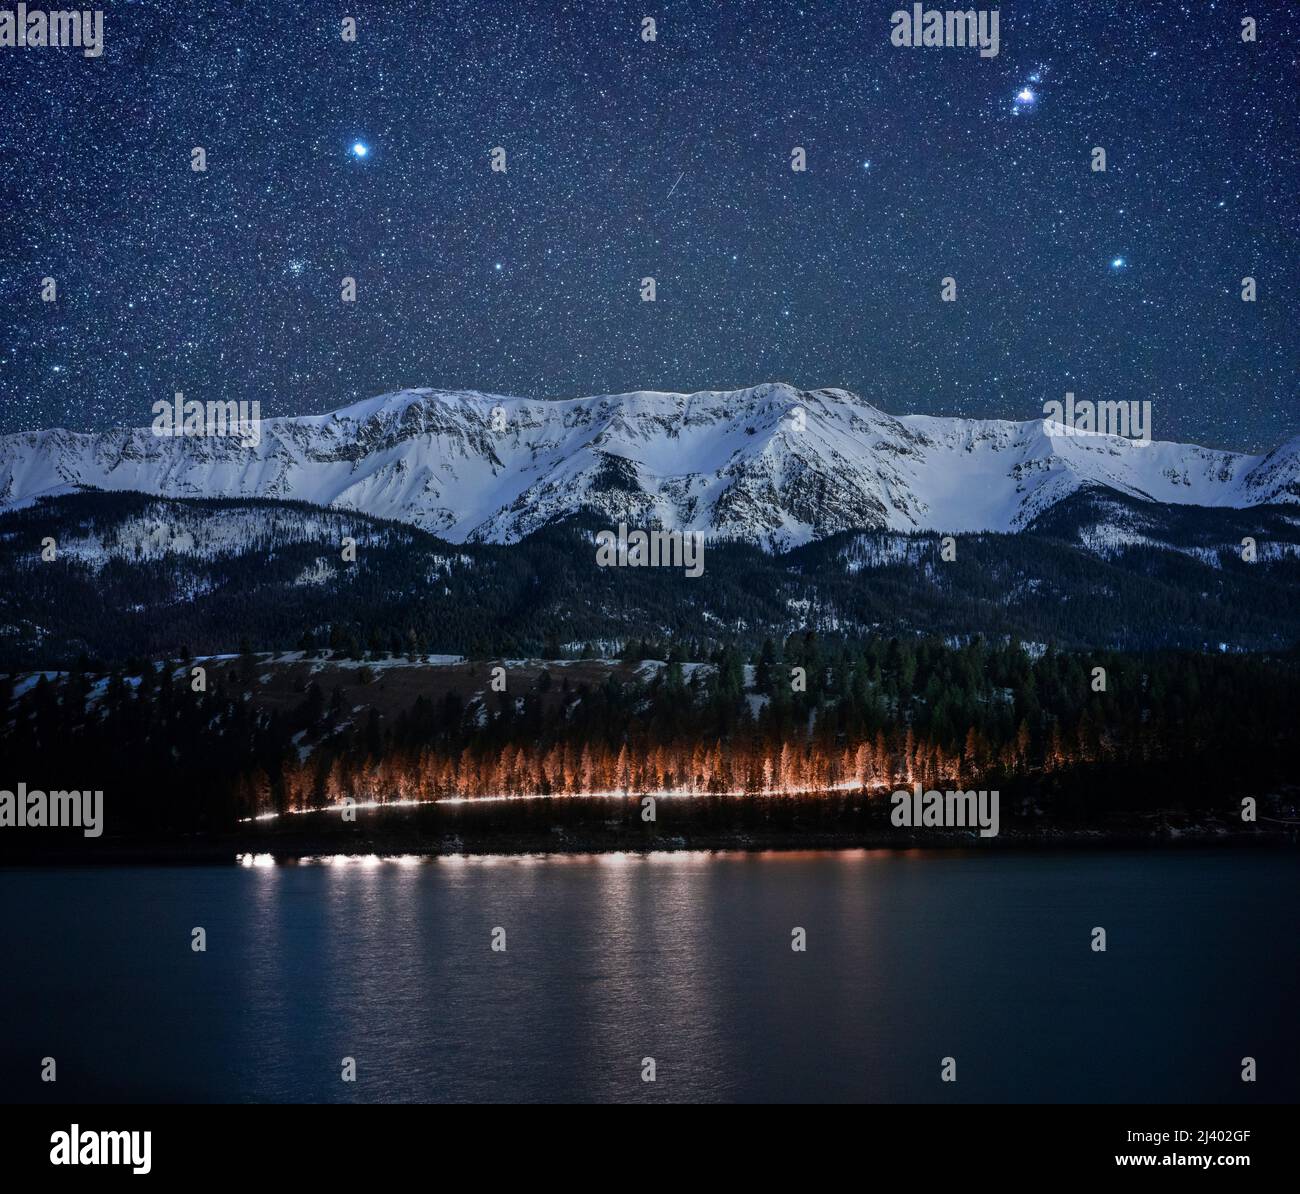 Chief Joseph Mountain under a night sky, Wallowa Lake, Oregon Stock Photo